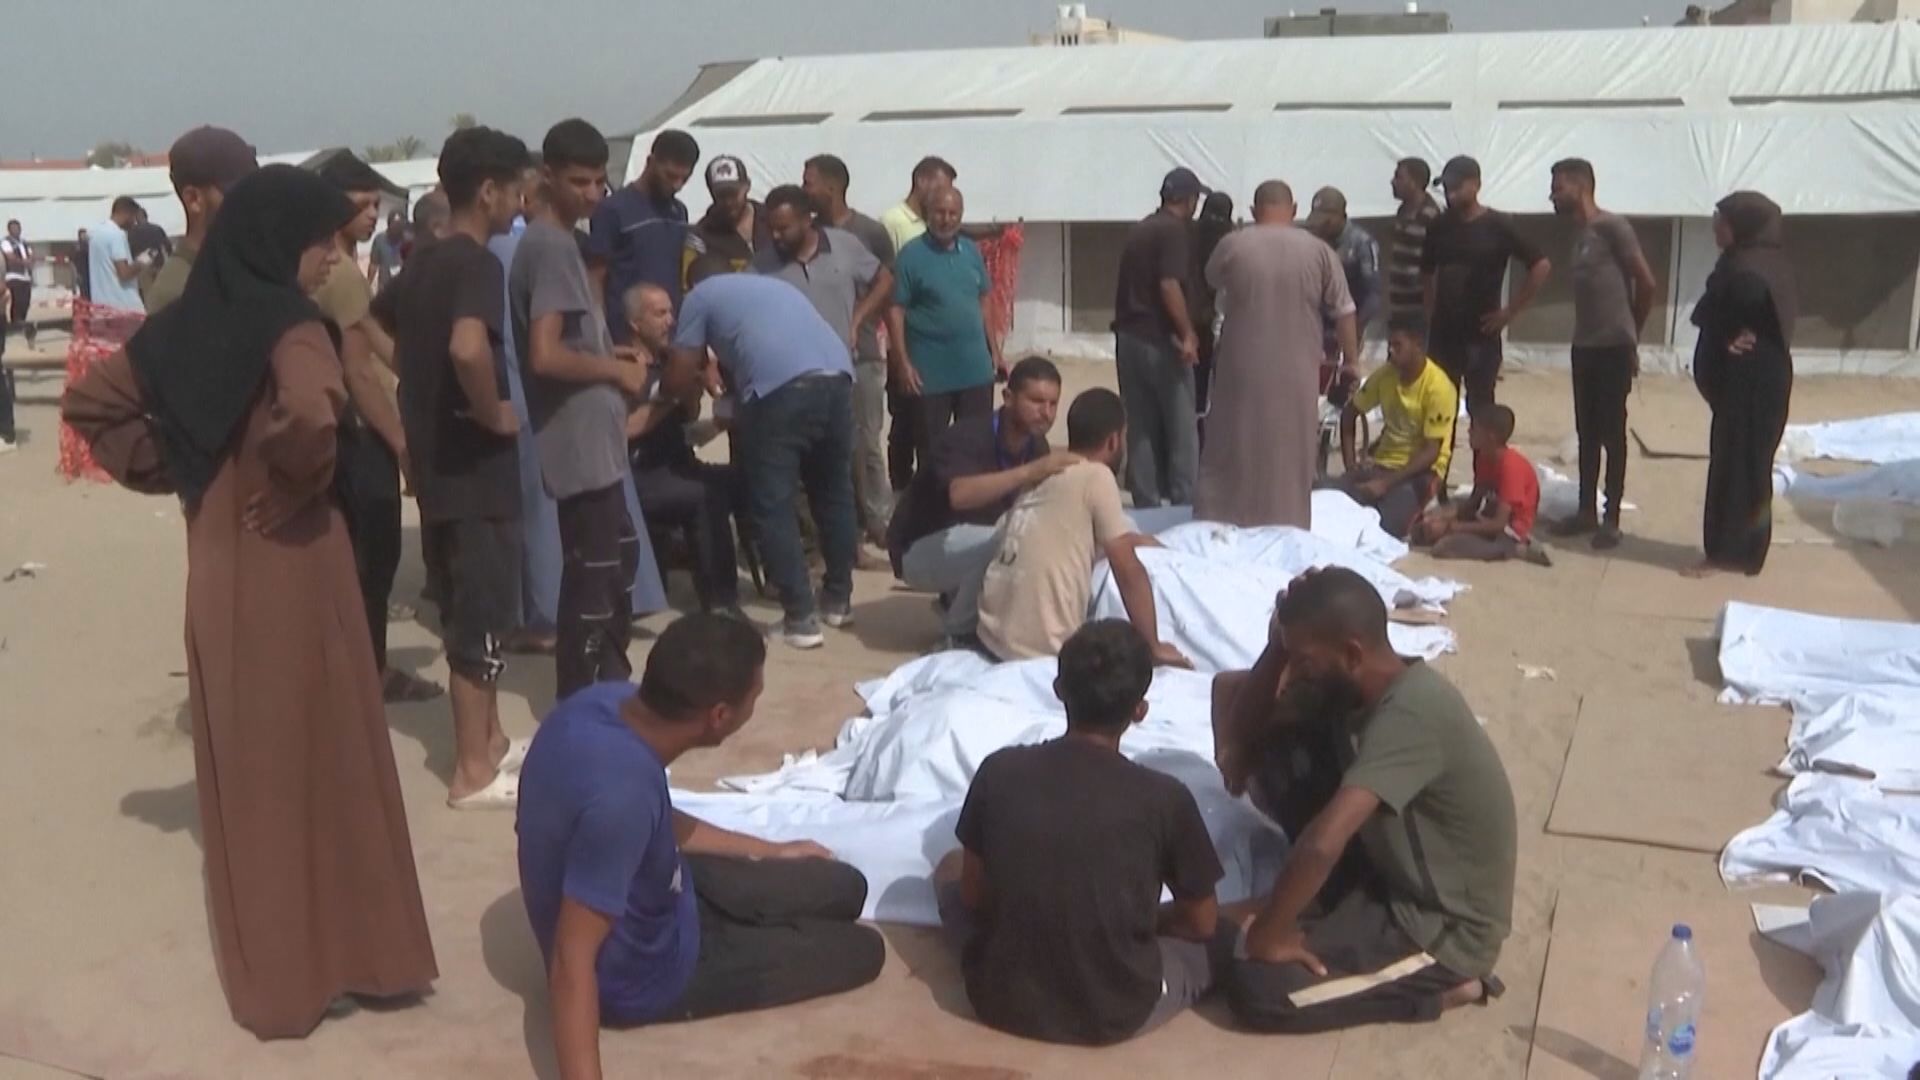 拉法再有難民營遇襲最少21死 以軍否認發動襲擊